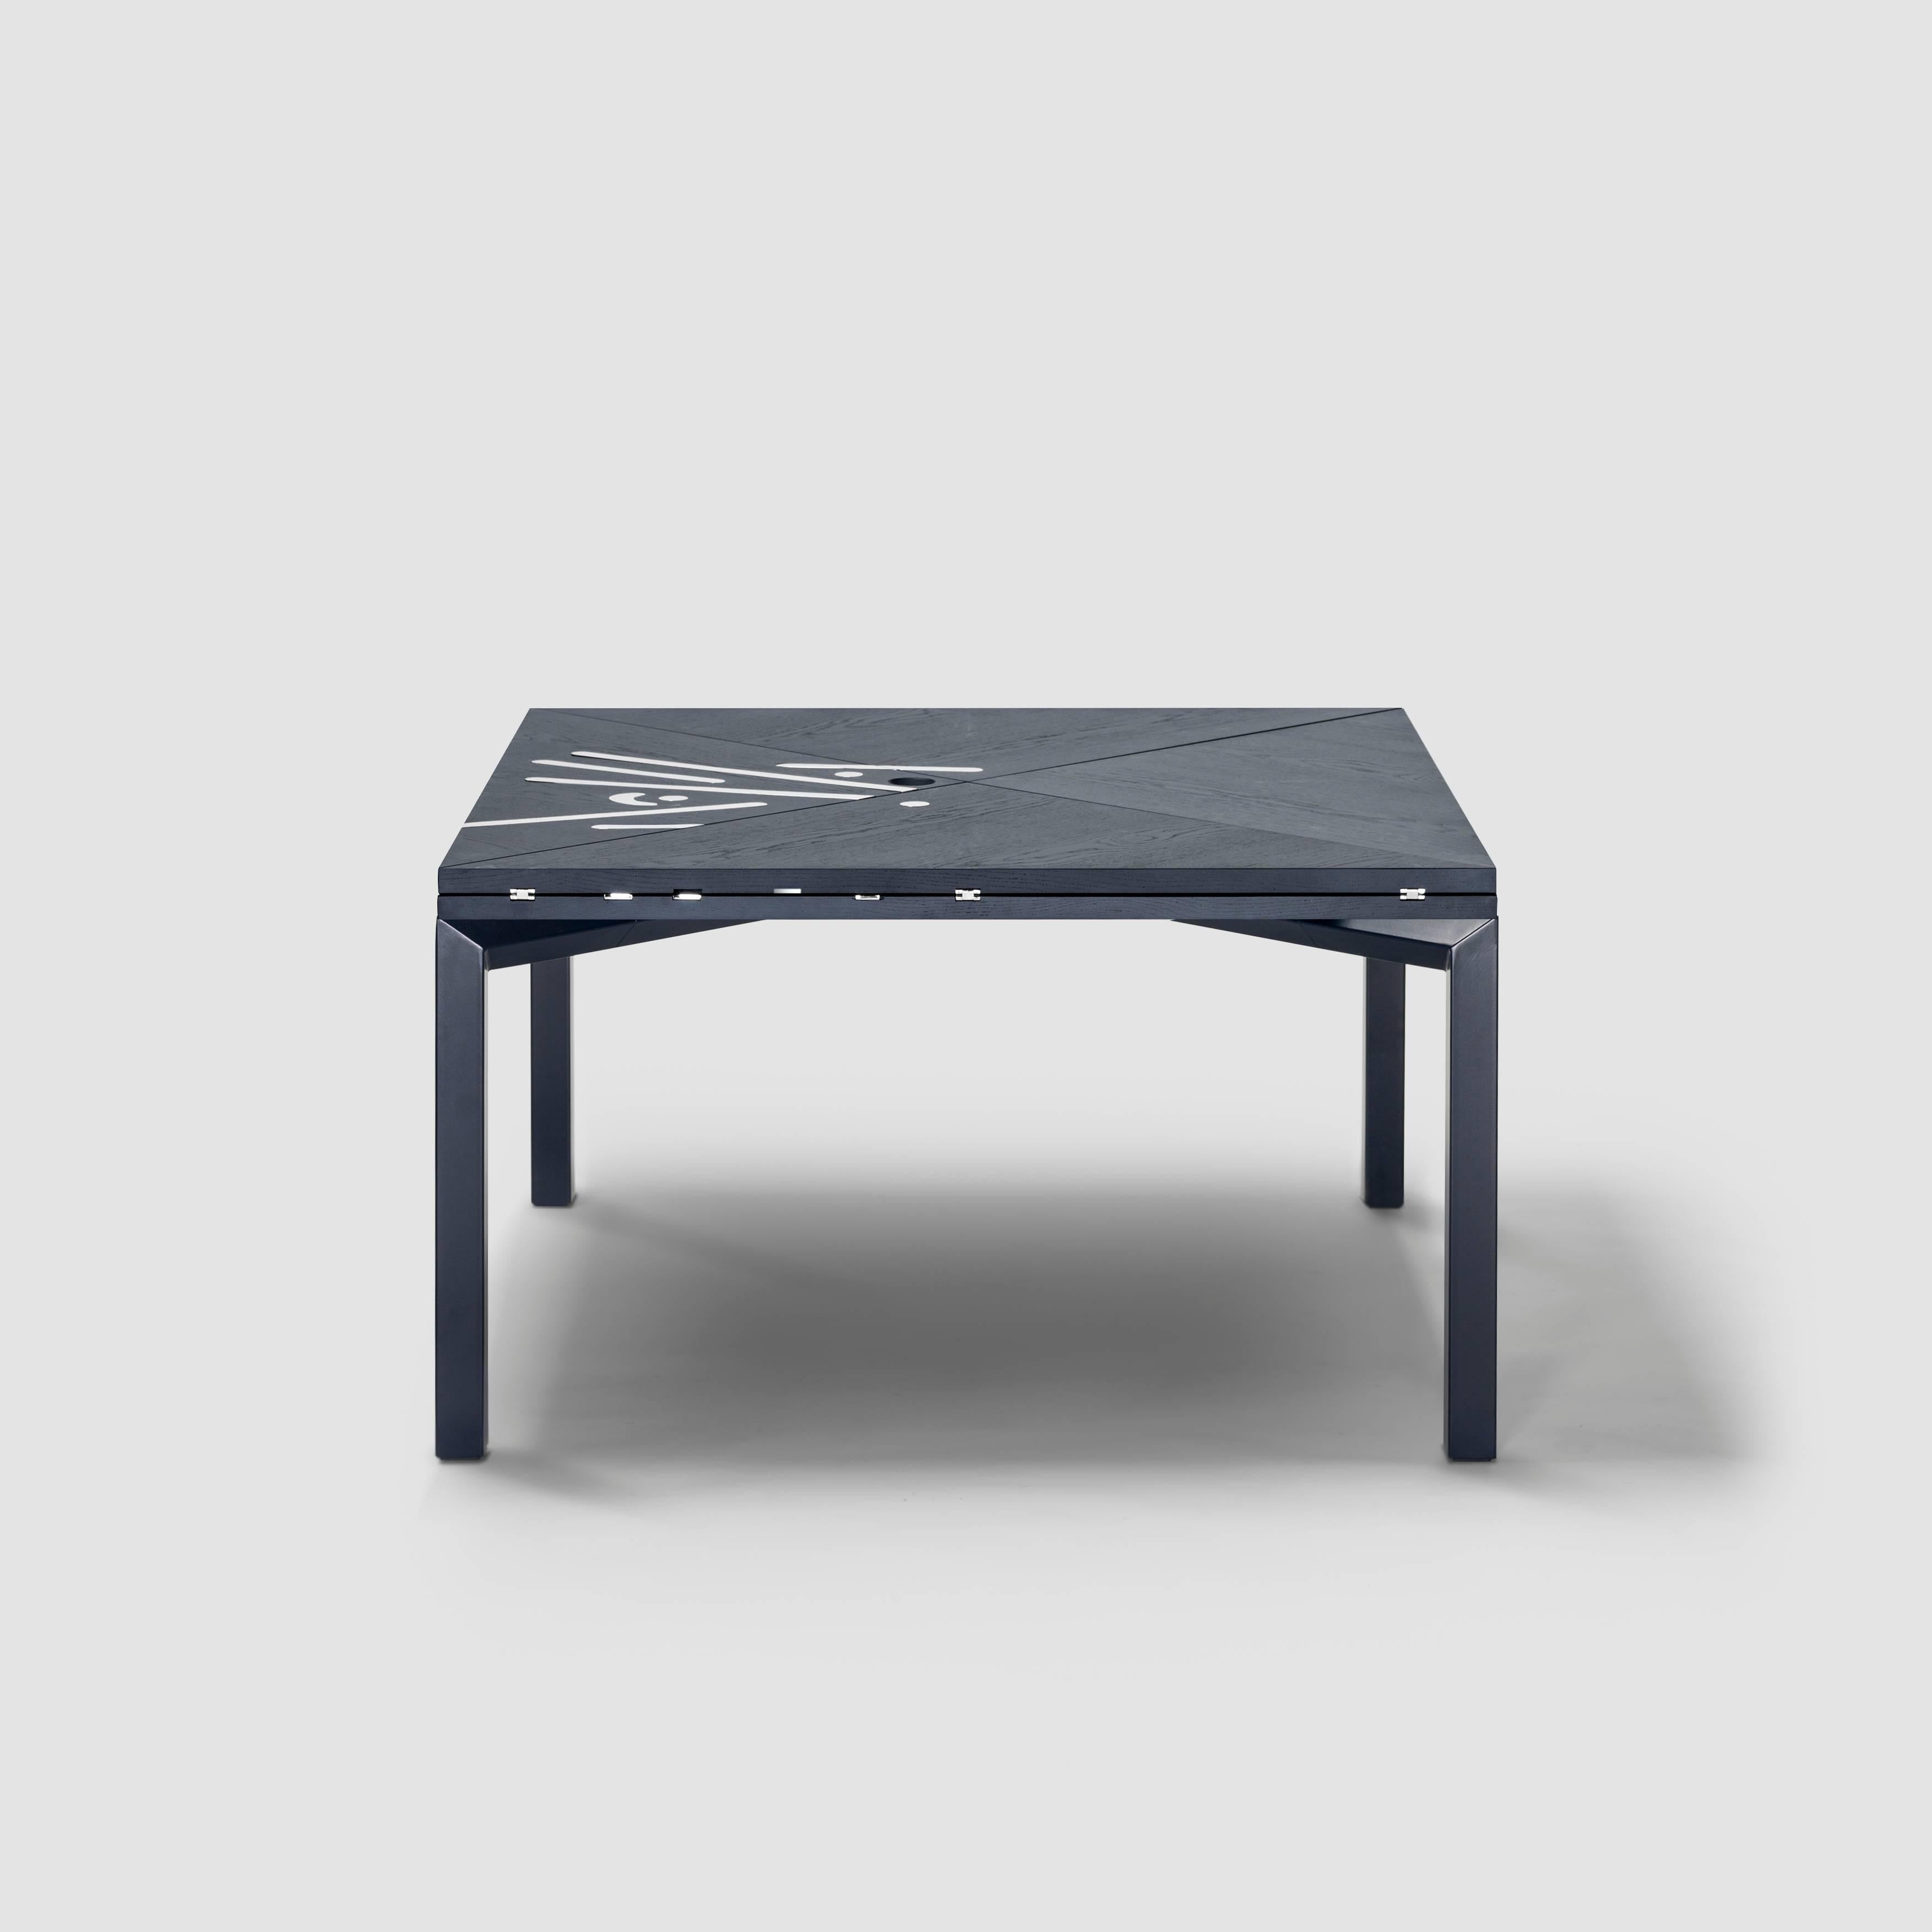 Table Alella conçue par Lluís Clotet.

Edition limitée à 8 unités + 2 épreuves d'artiste + 2 prototypes.
DM, plaqué chêne et teinté en bleu foncé RAL 5004.
Pieds en tube rectangulaire en fer laqué dans la même couleur que le plateau.
Charnières